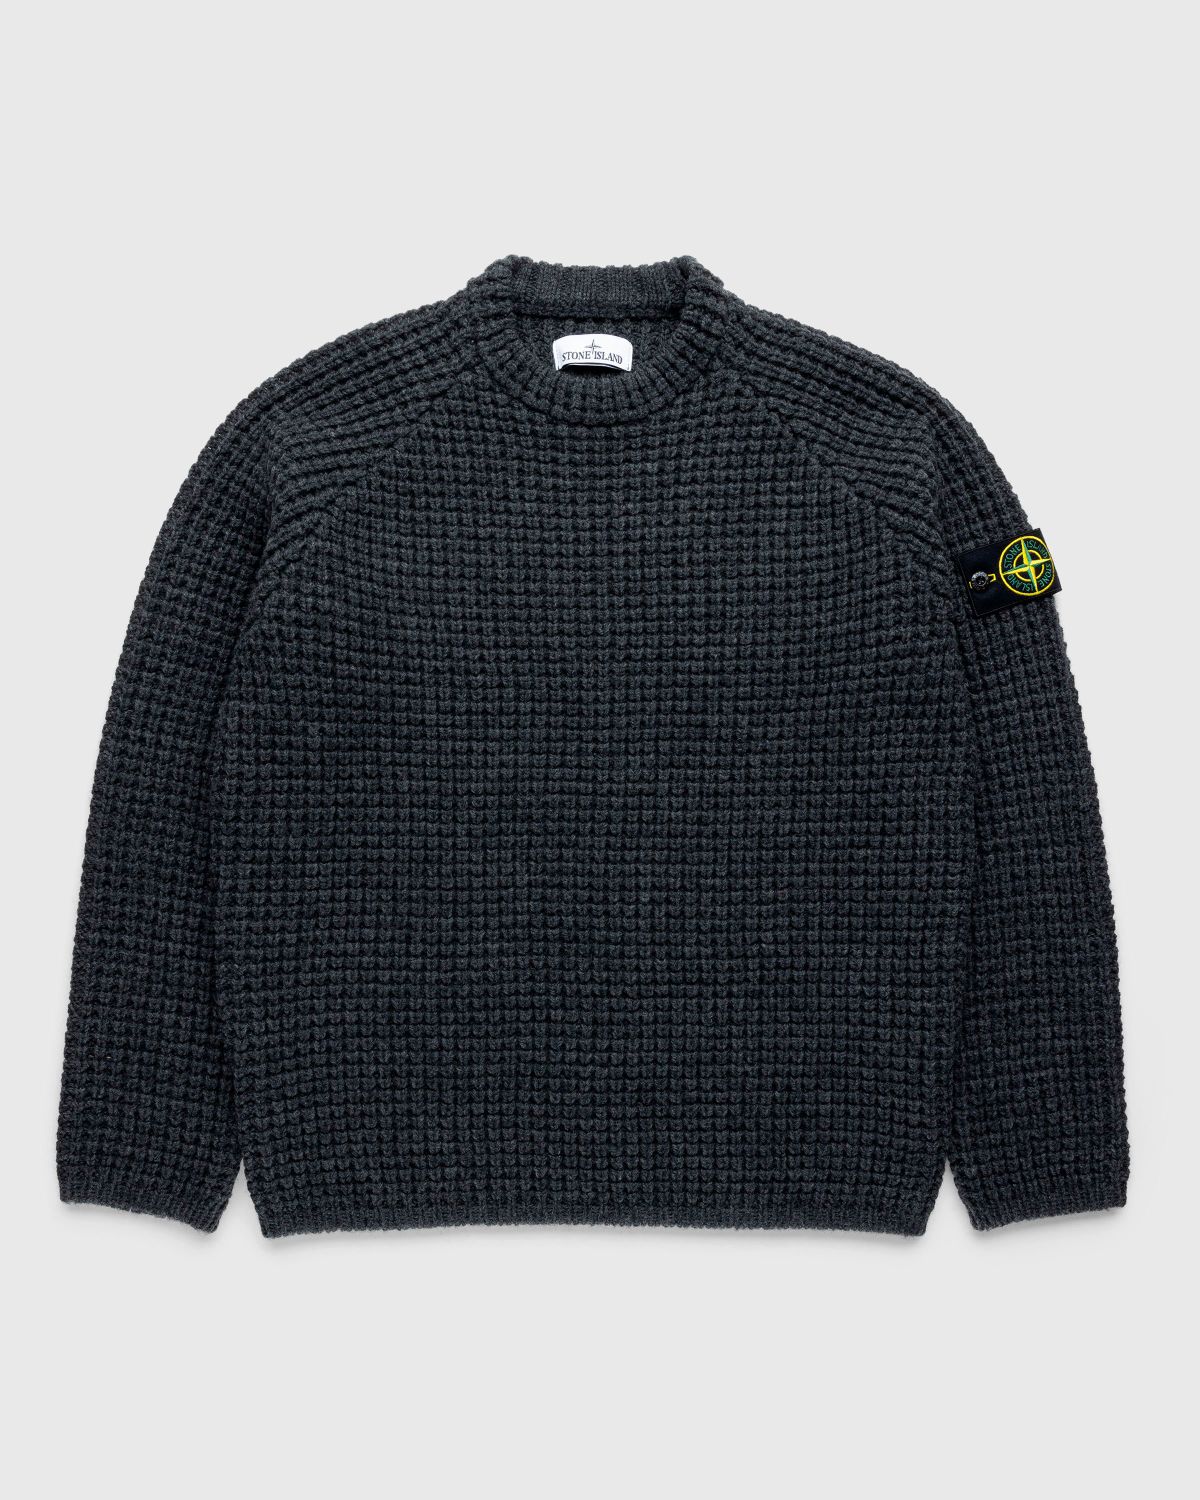 還元祭 - stone island 2018 Official Lightweat knit Sweater sweater ...